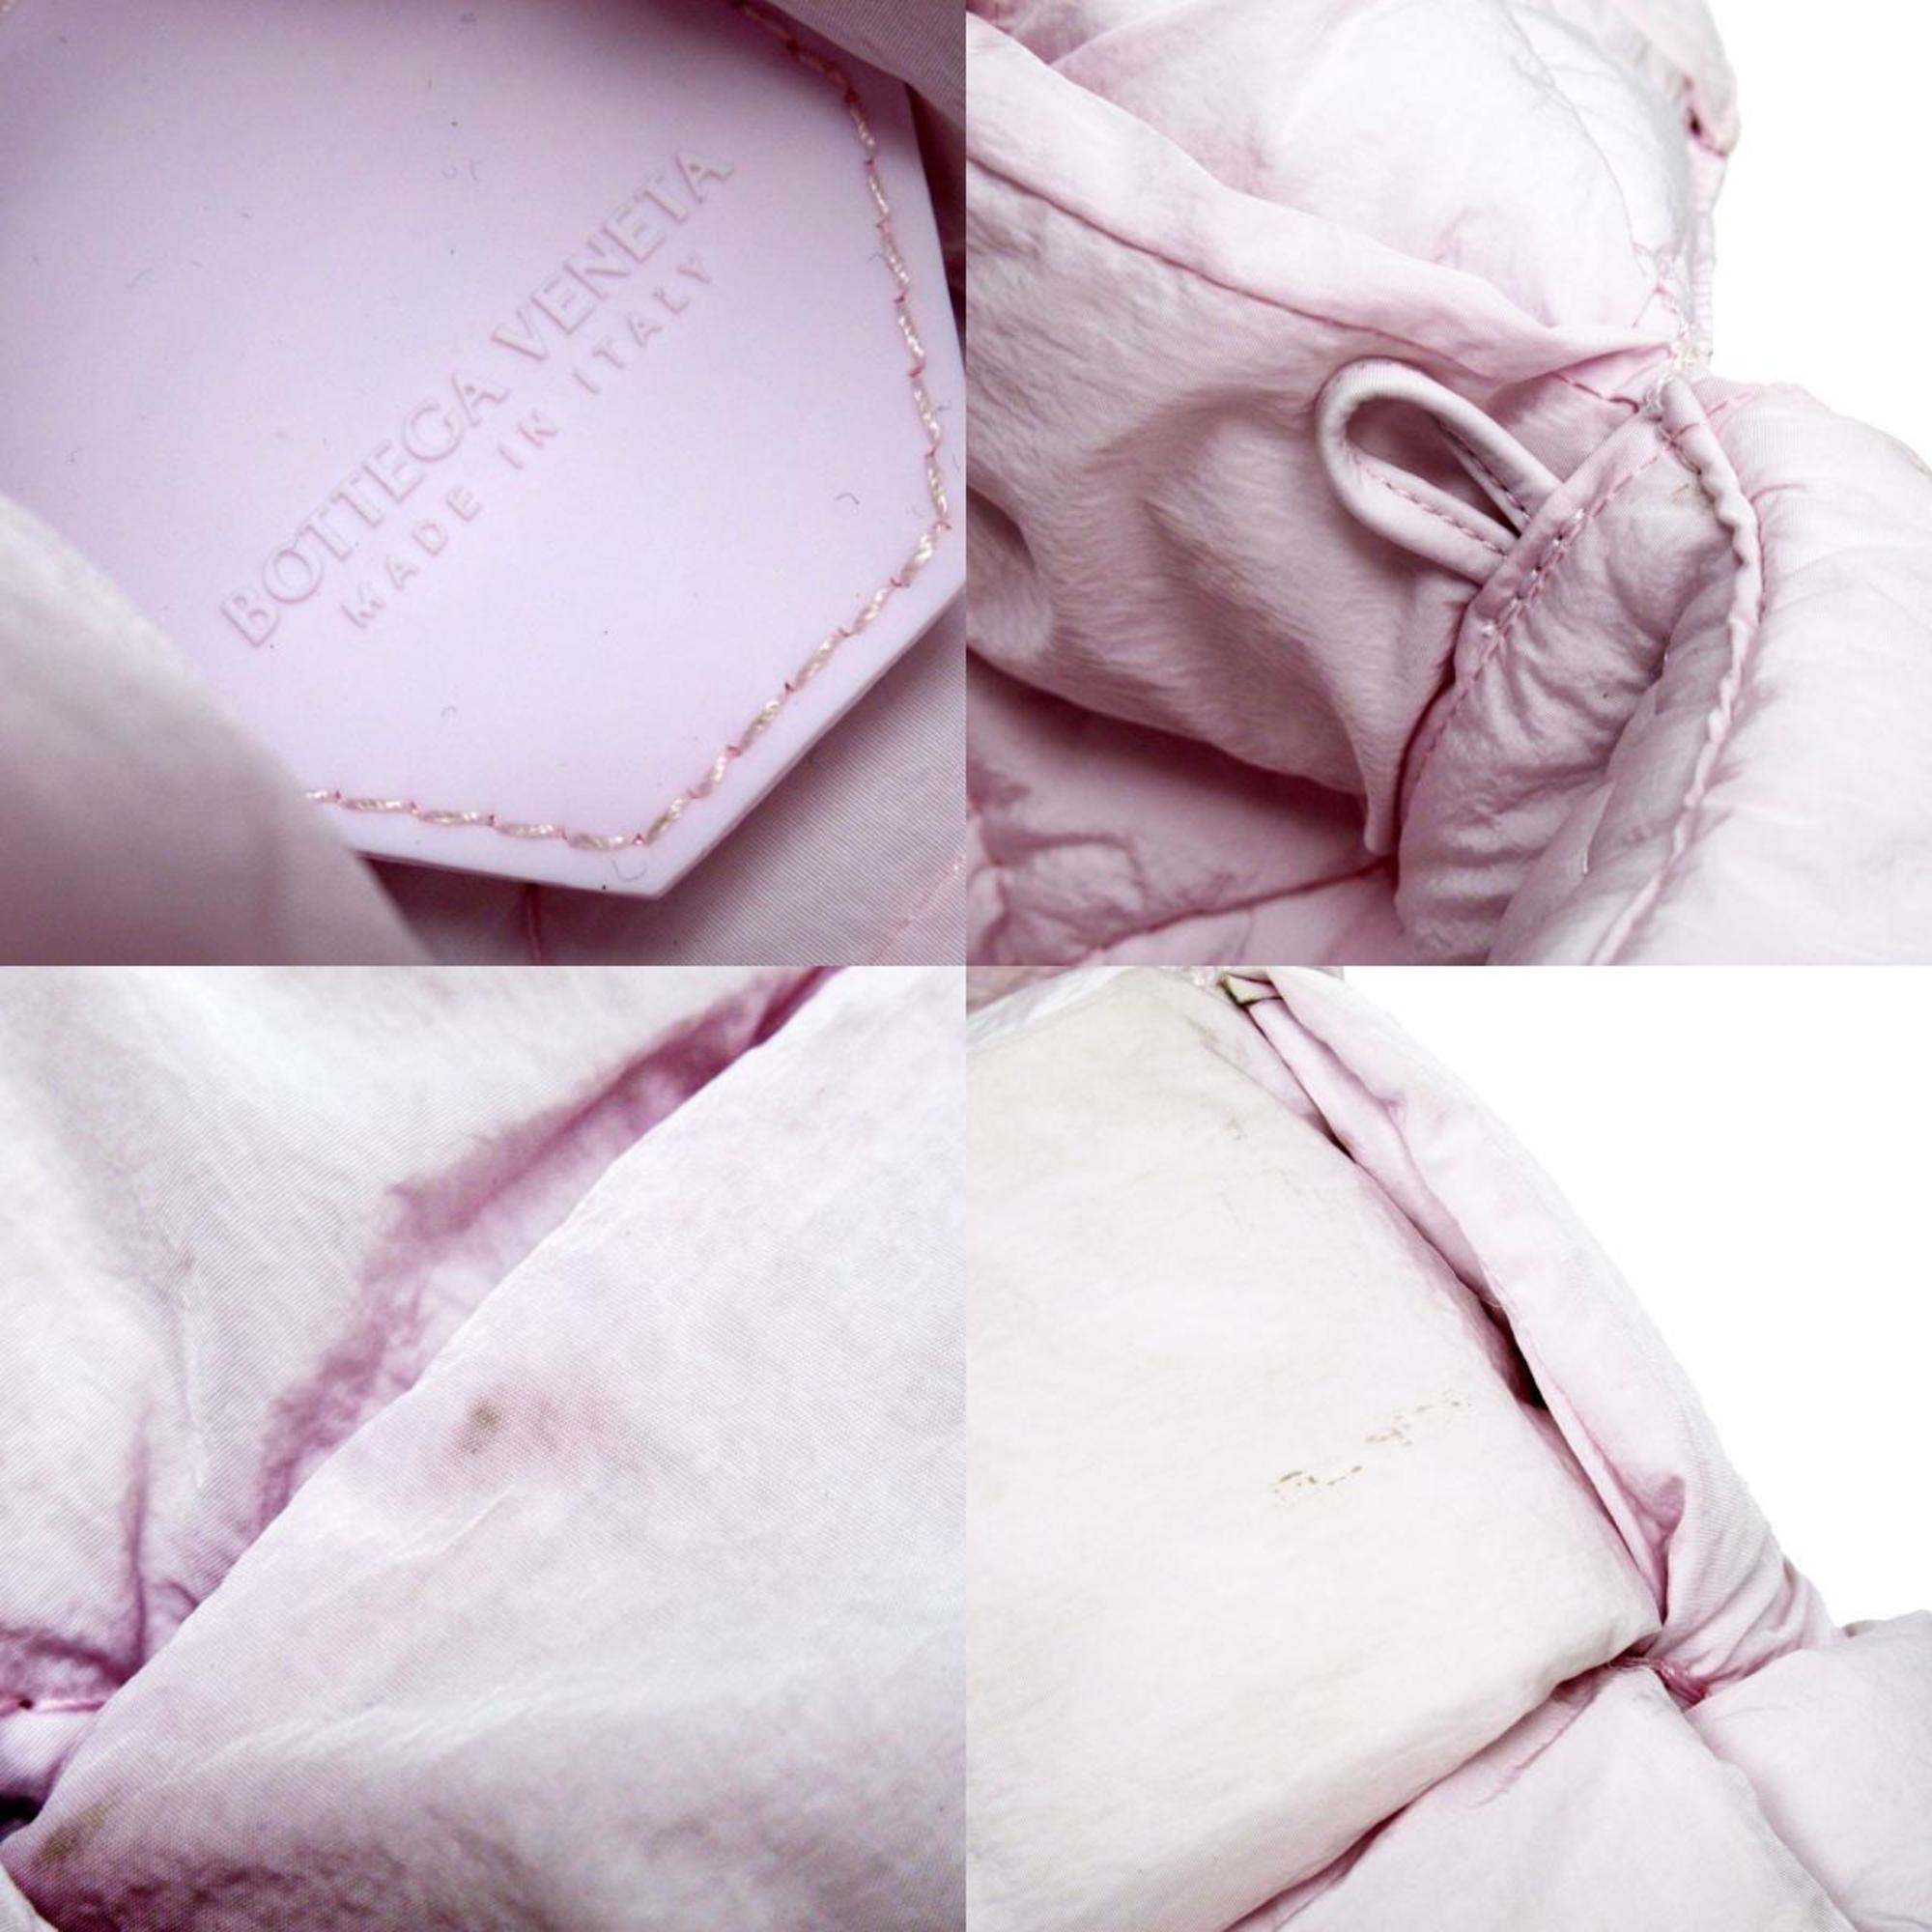 BOTTEGA VENETA shoulder bag padded cassette nylon light pink women's w0242g